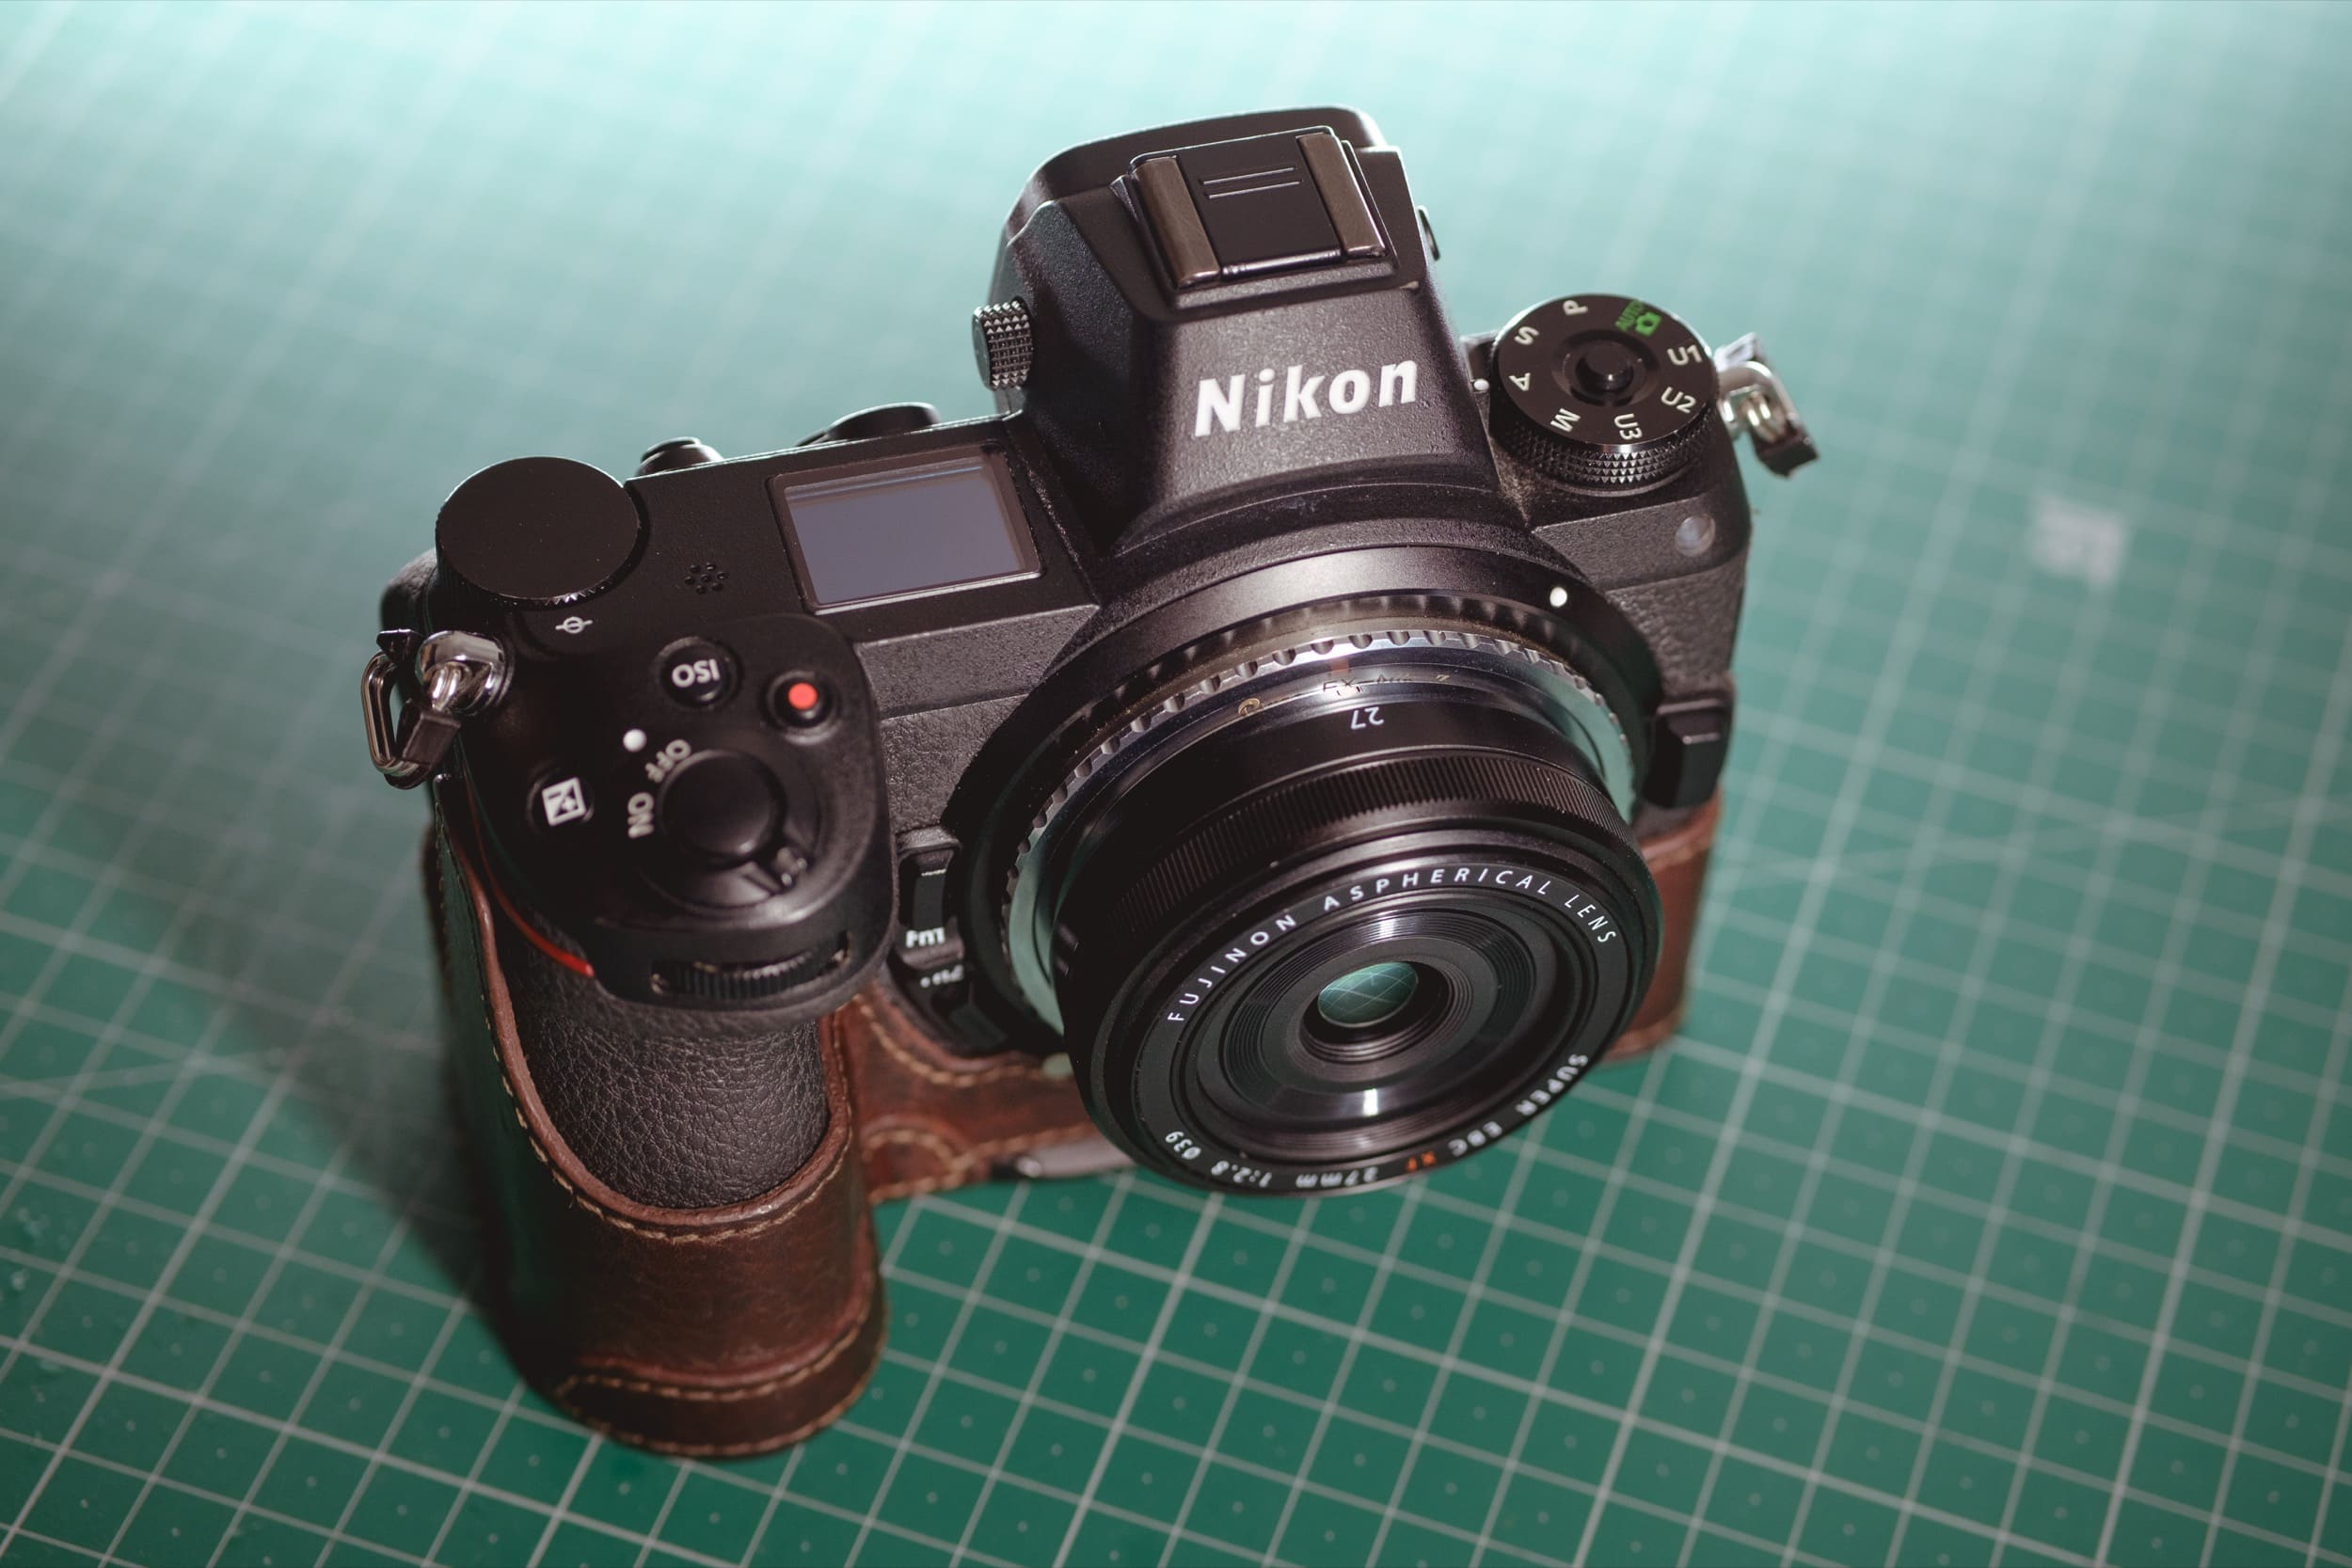 A Fujifilm lens on the Nikon Z6